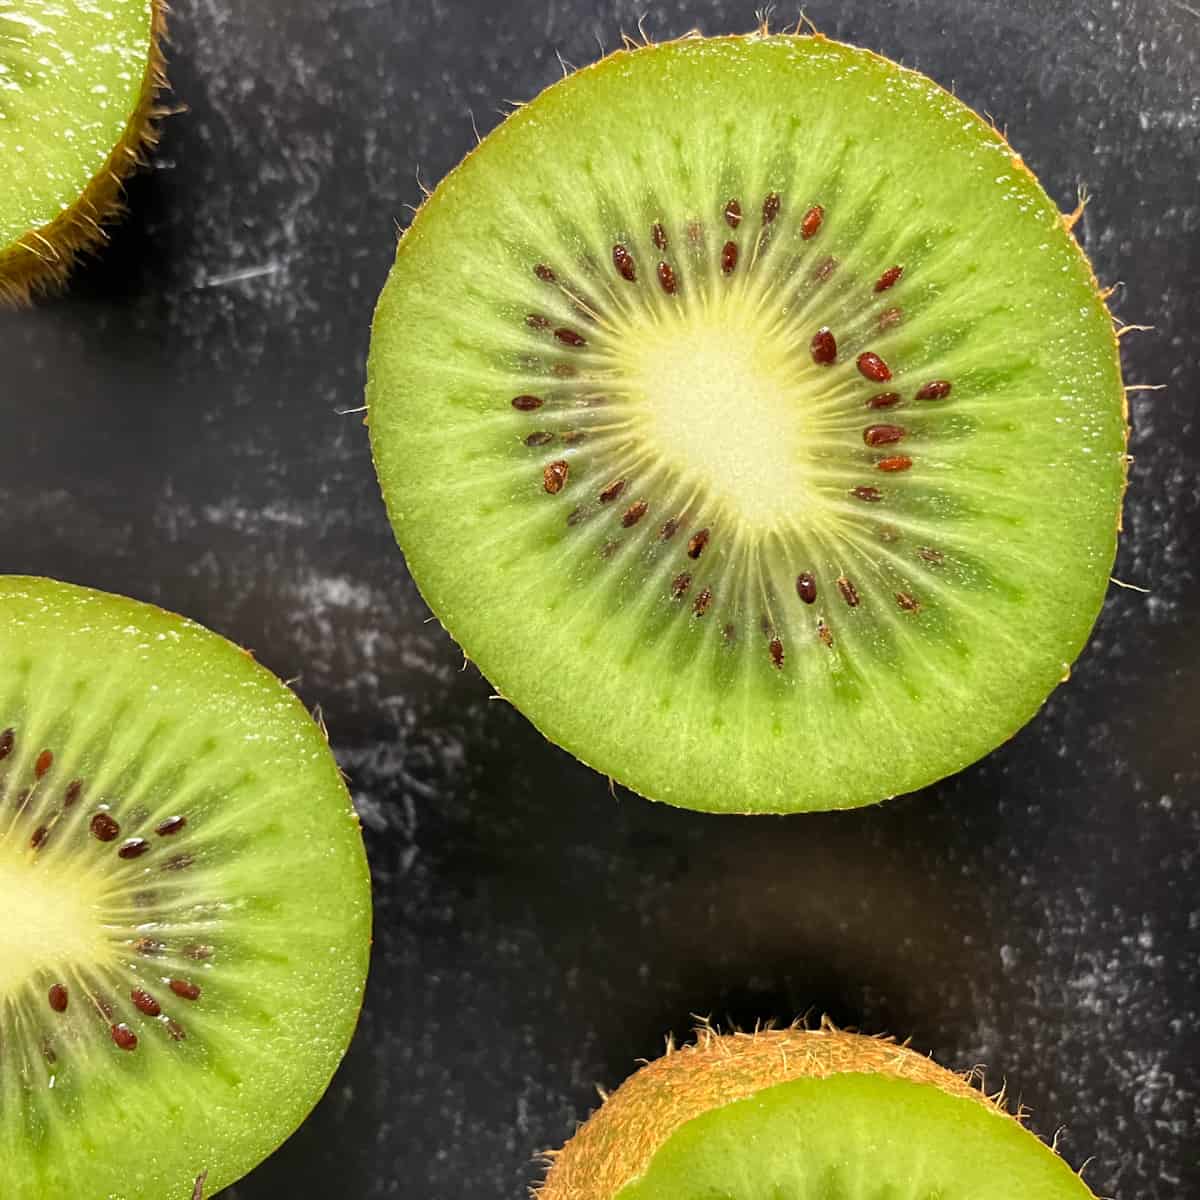 Kiwi, Description, Fruit, Nutrition, Species, & Facts